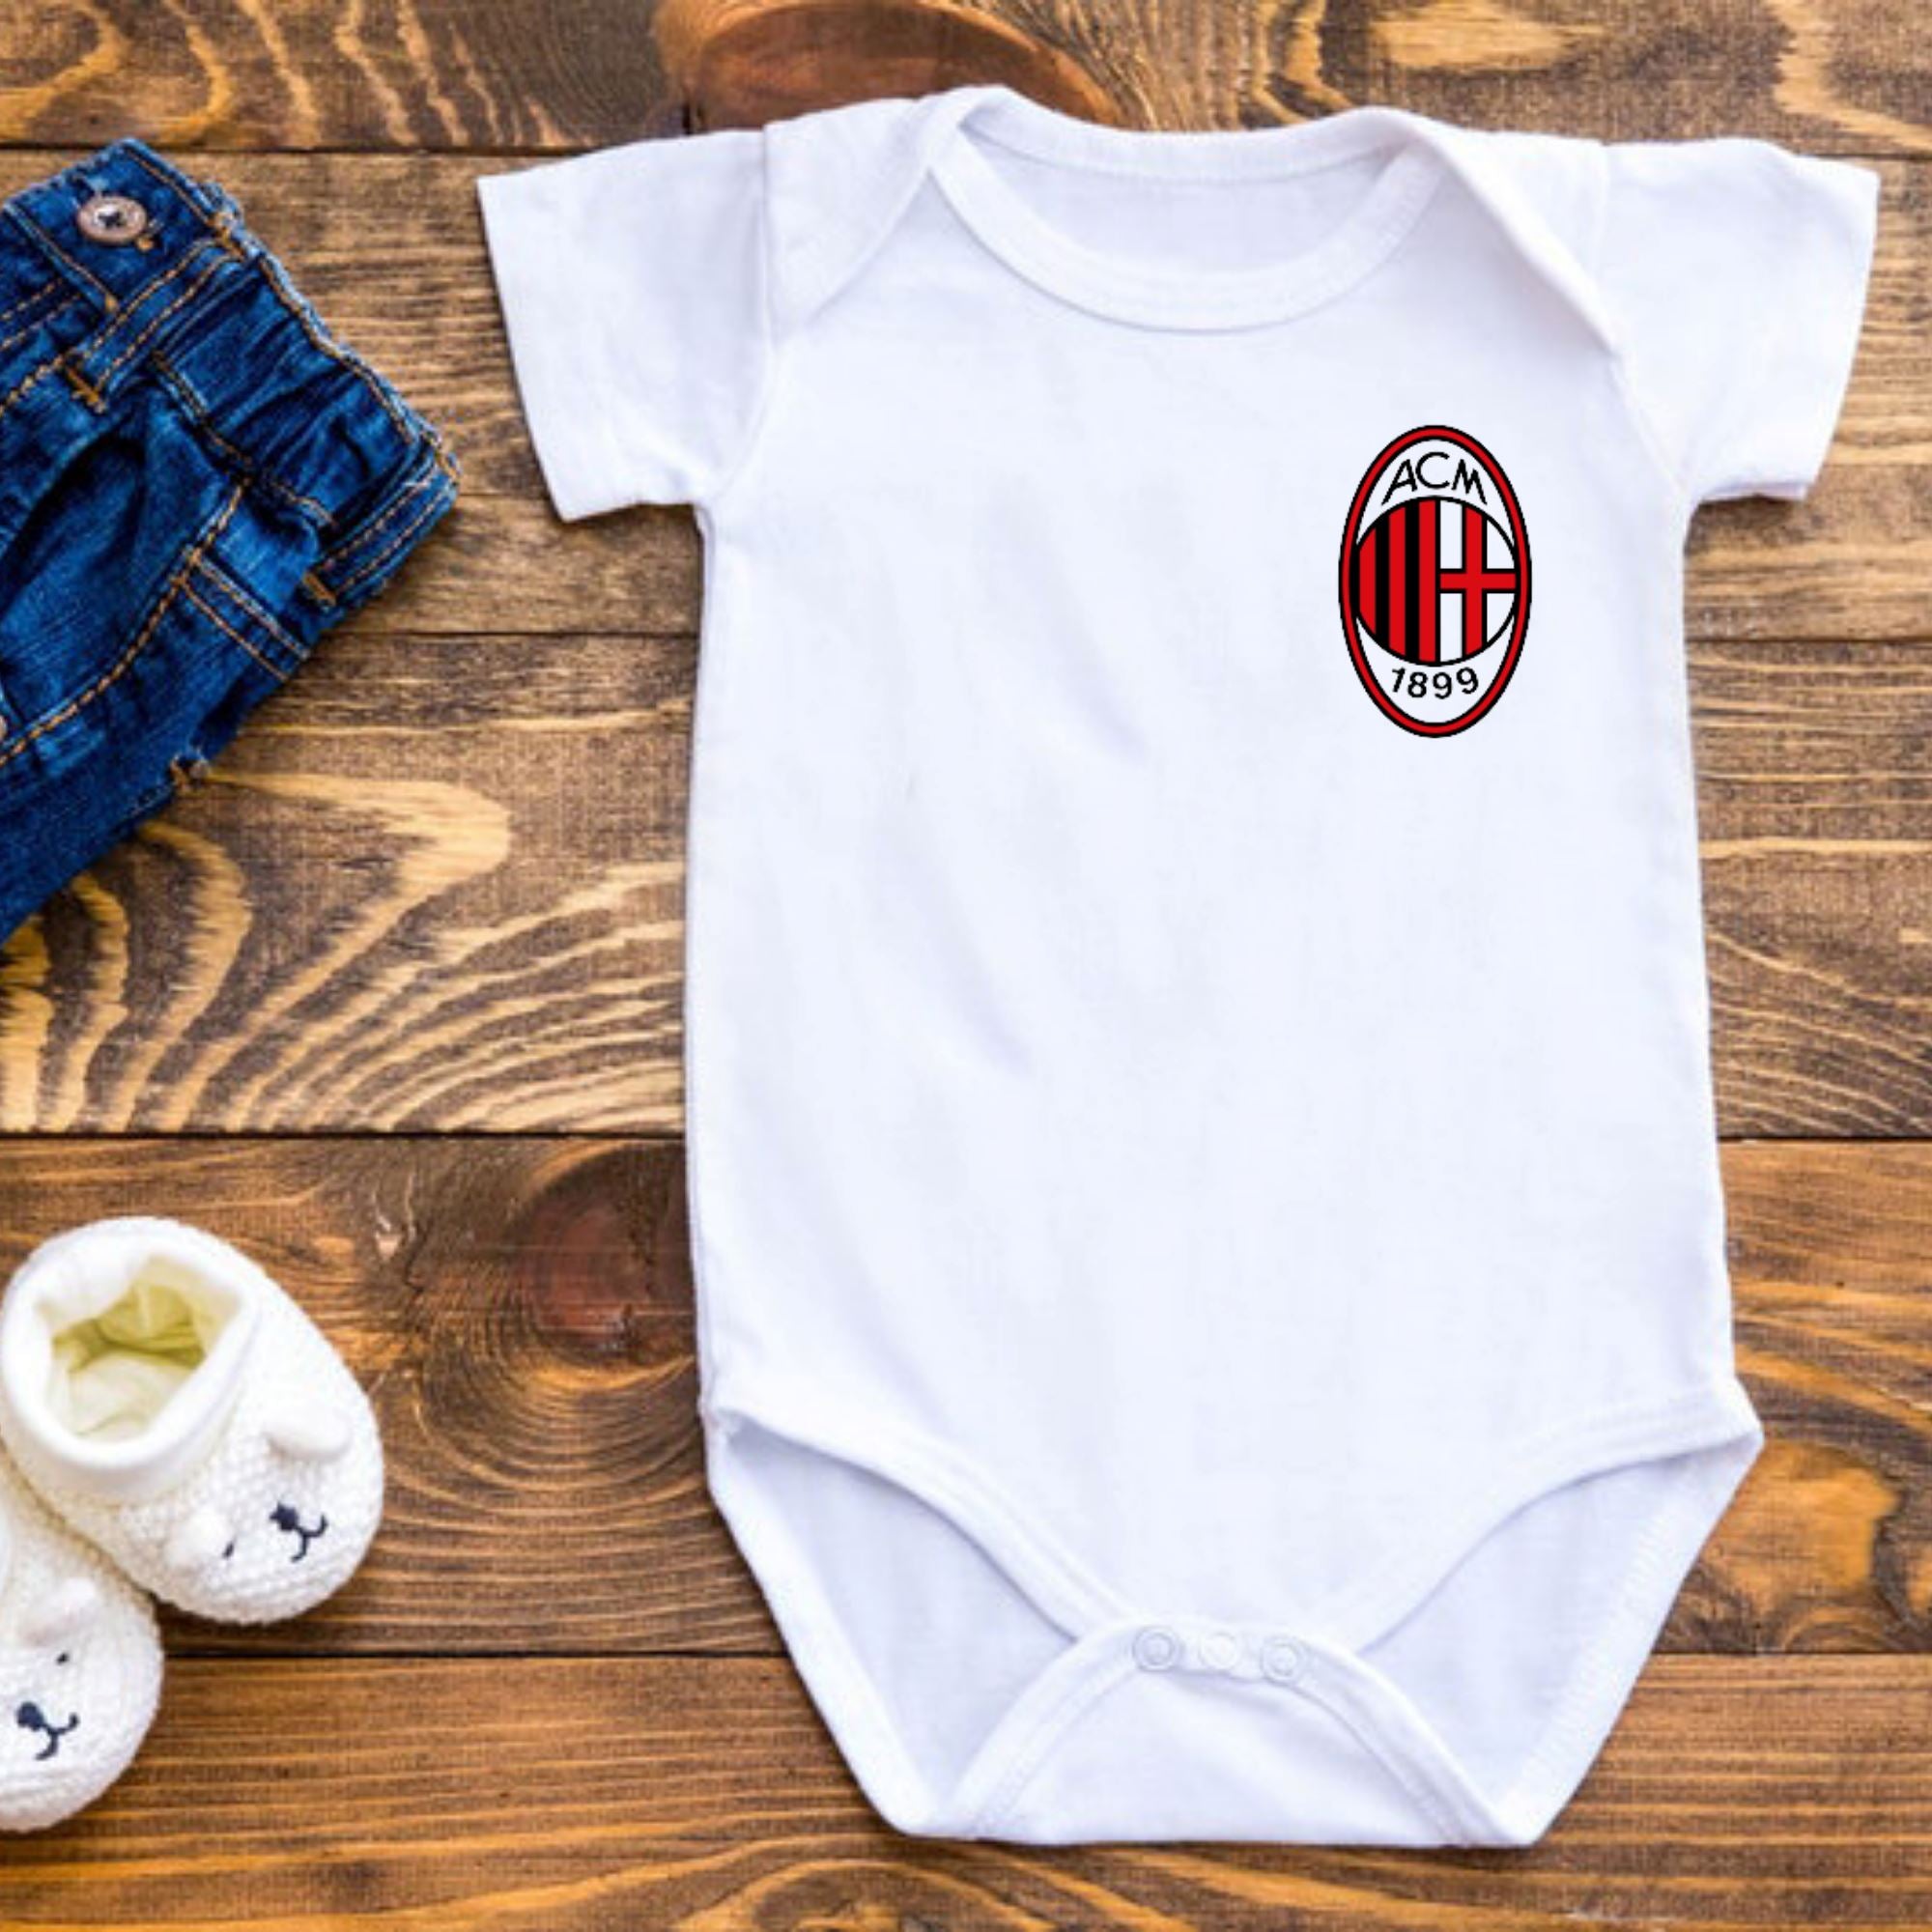 AC Milan Baby Bodysuit - ITASPORT